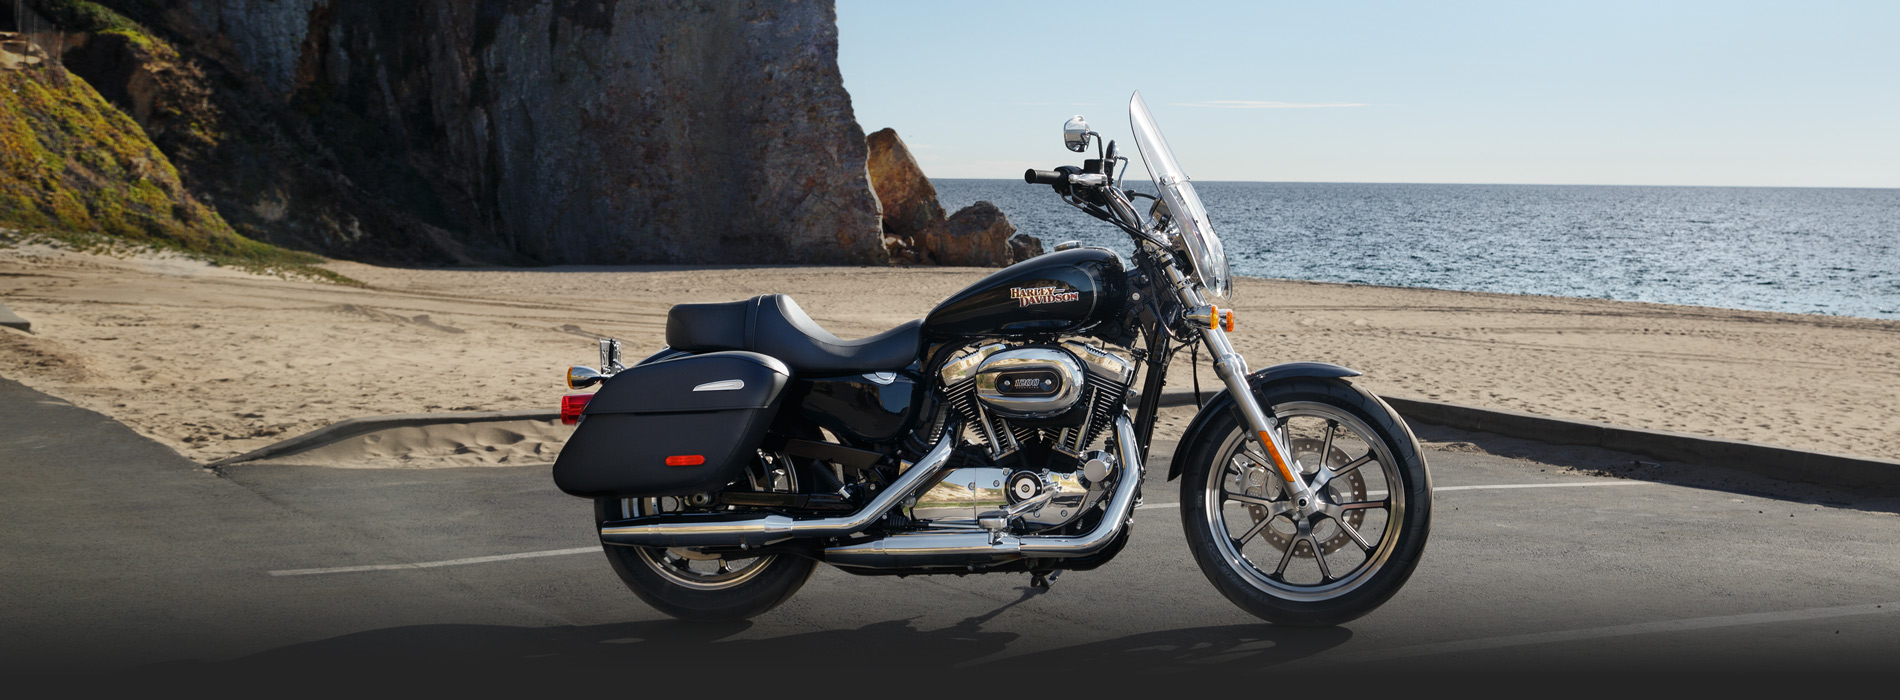 Harley-Davidson SuperLow Backgrounds on Wallpapers Vista